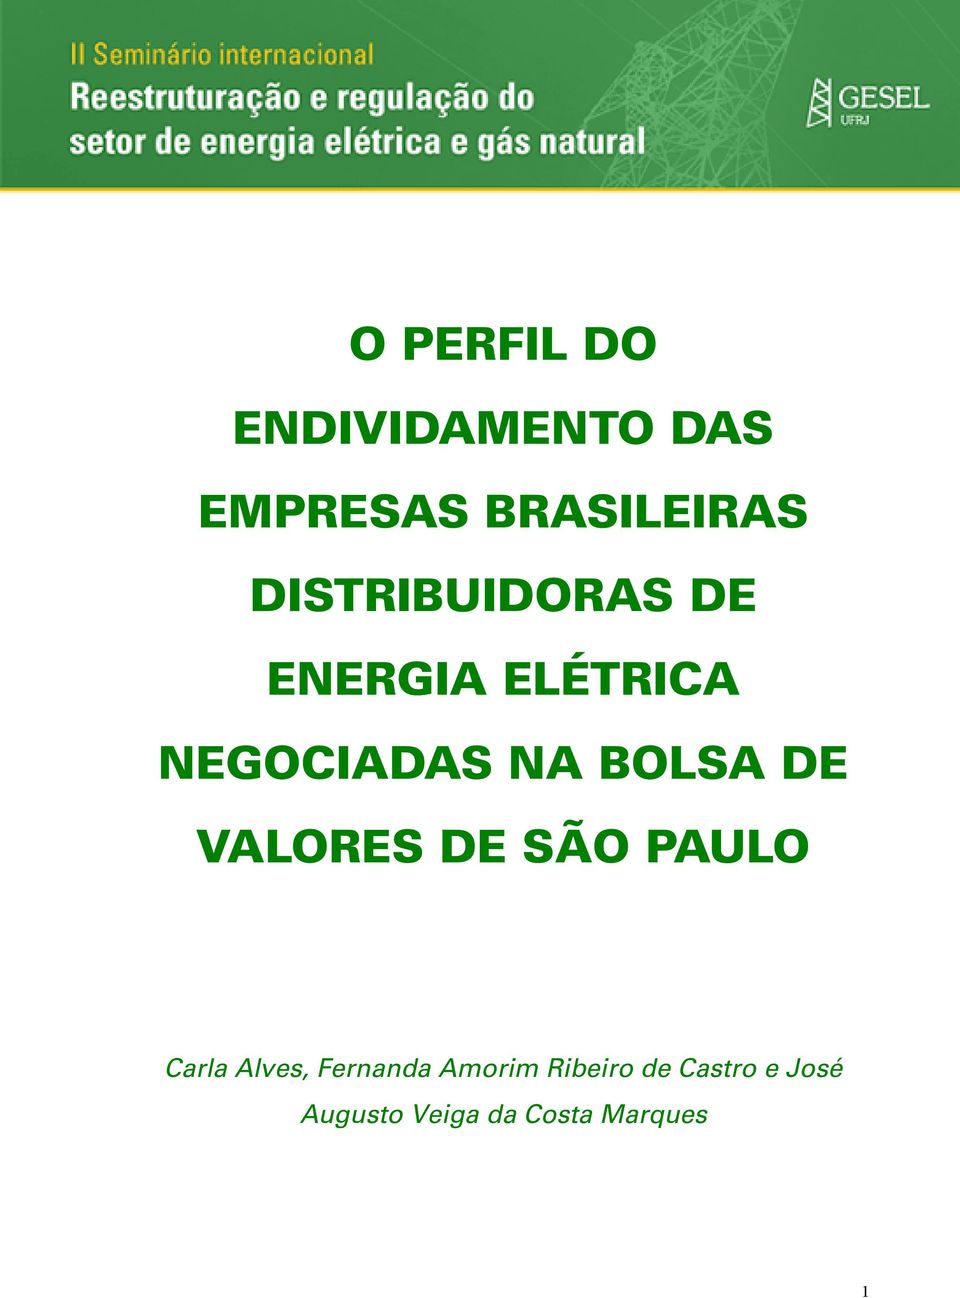 BOLSA DE VALORES DE SÃO PAULO Carla Alves, Fernanda